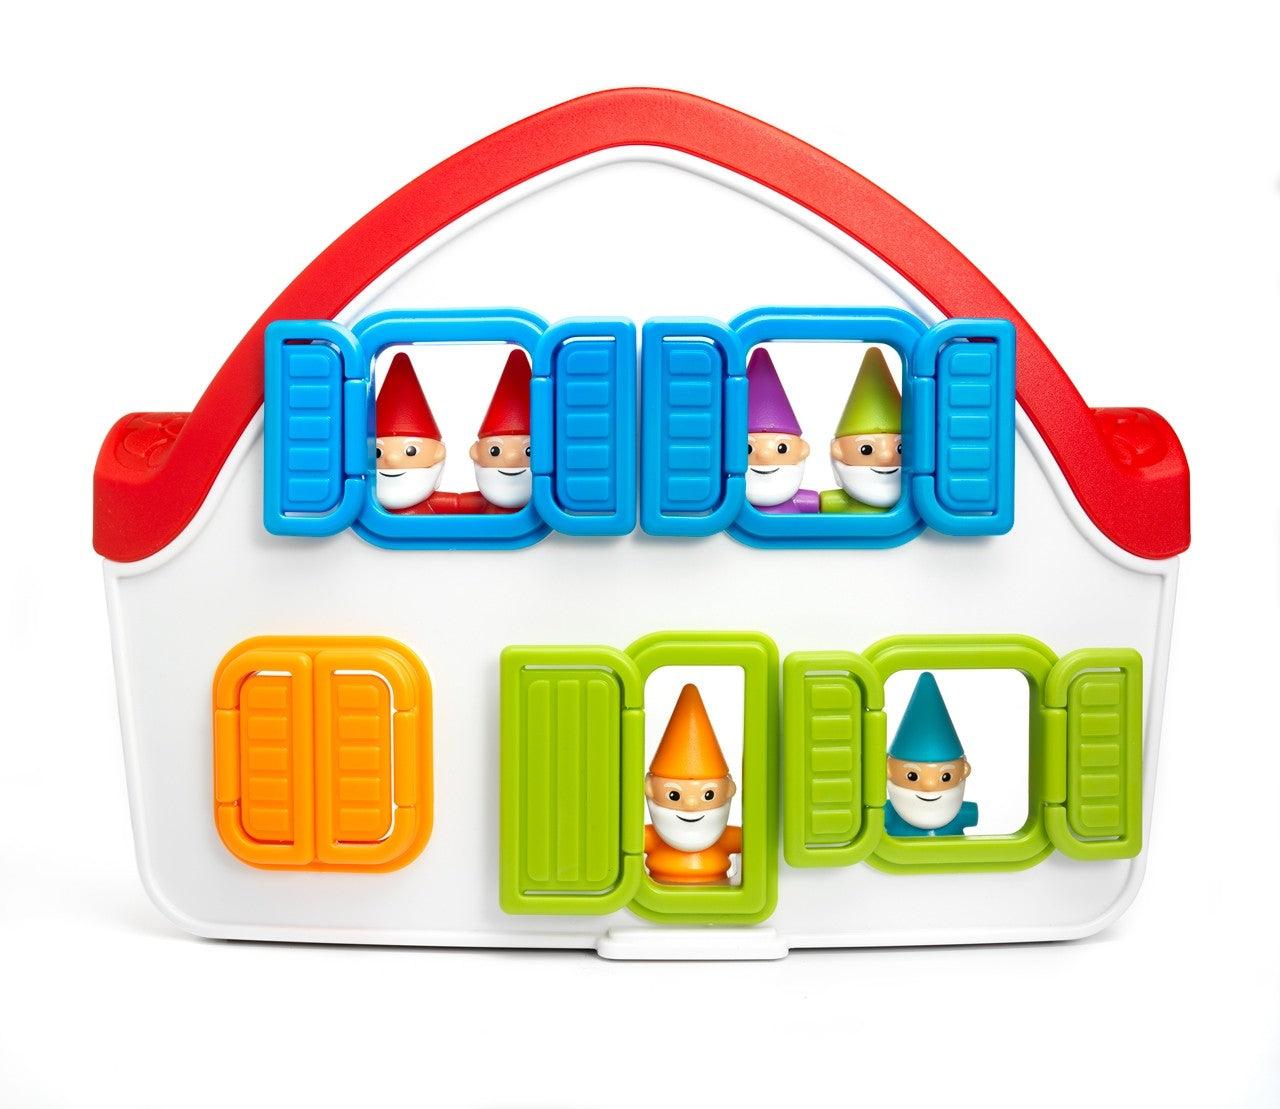 Gra logiczna Królewna Śnieżka Smart Games - 48 wyzwań dla dzieci 4-7 lat,  edukacyjna zabawa w 3D domku z krasnalami i czarownicą - IUVI Games